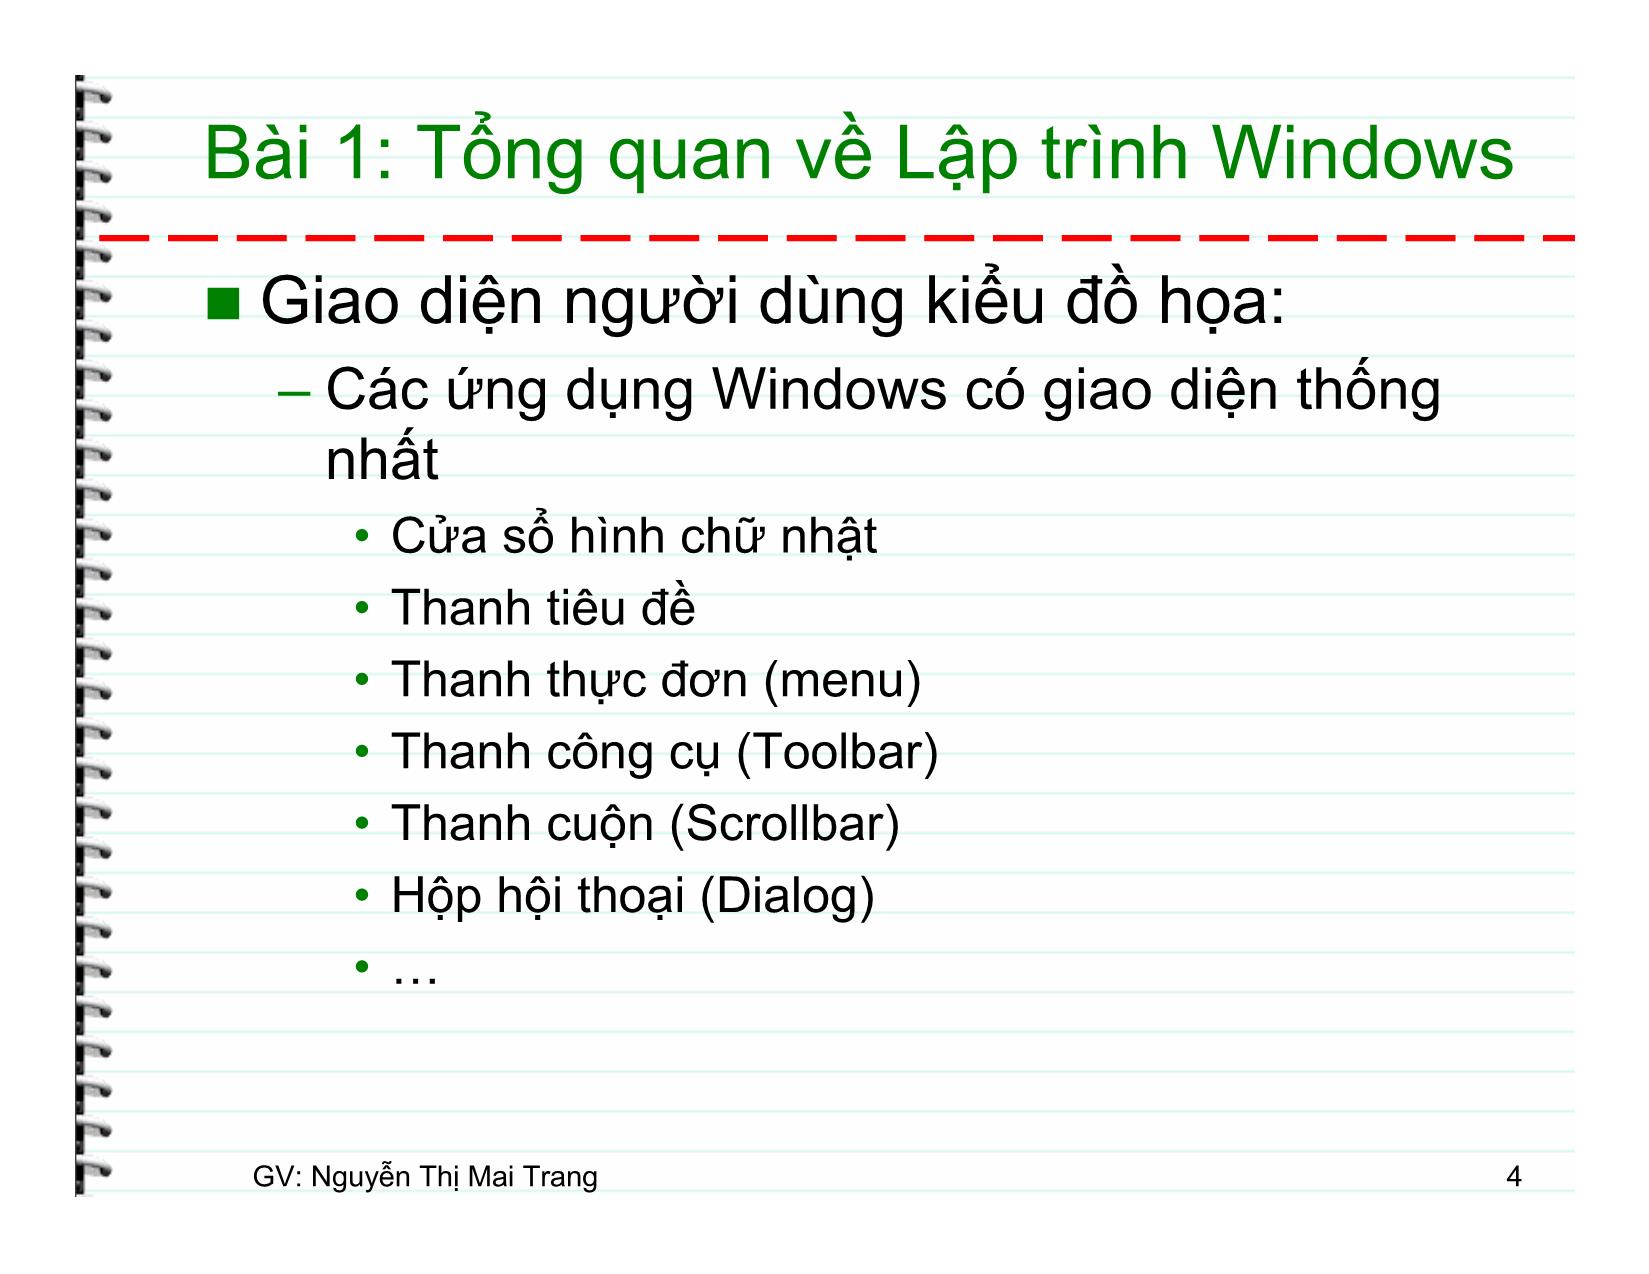 Lập trình Windows trang 4